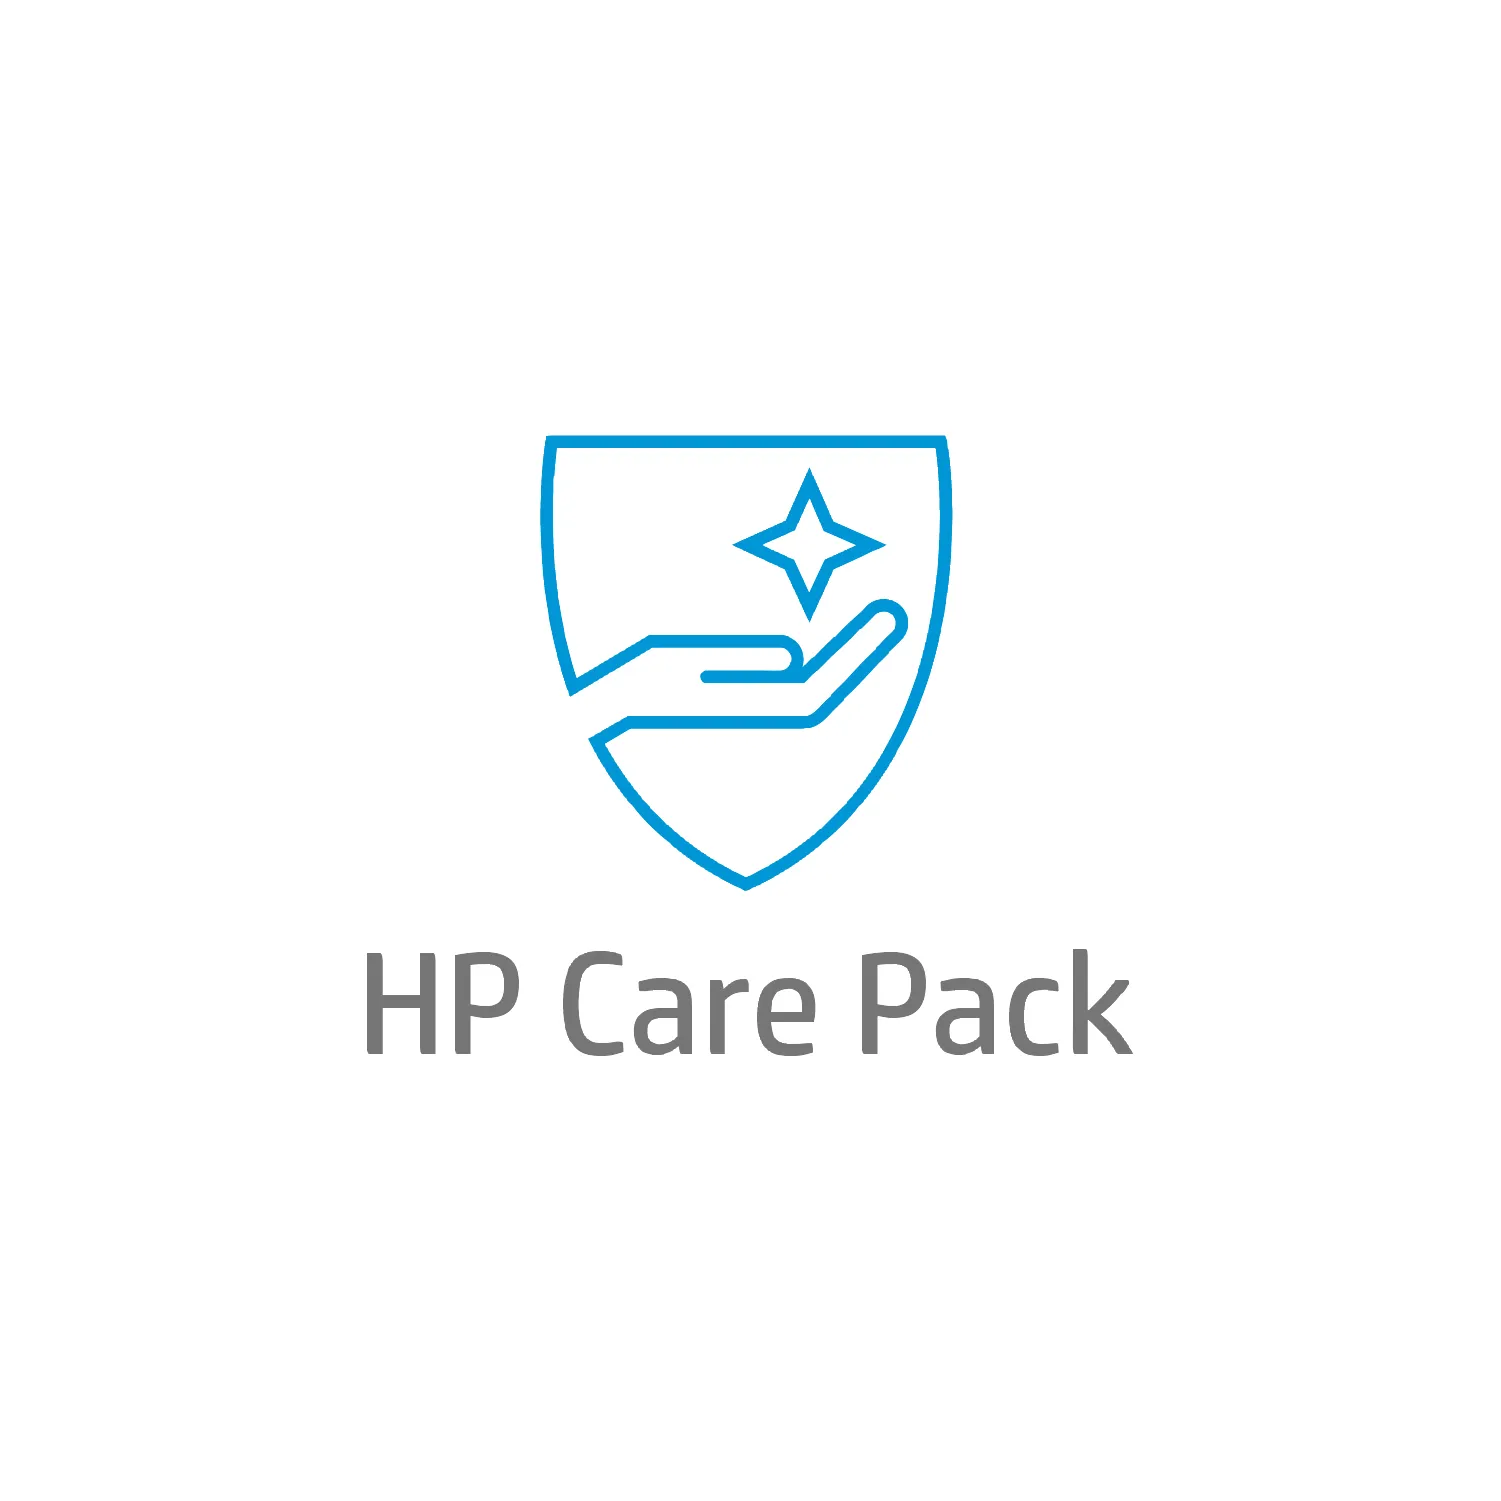 Vente HP E-CAREPACK 3 ANS ECHANGE LE LENDEMAIN HP au meilleur prix - visuel 2